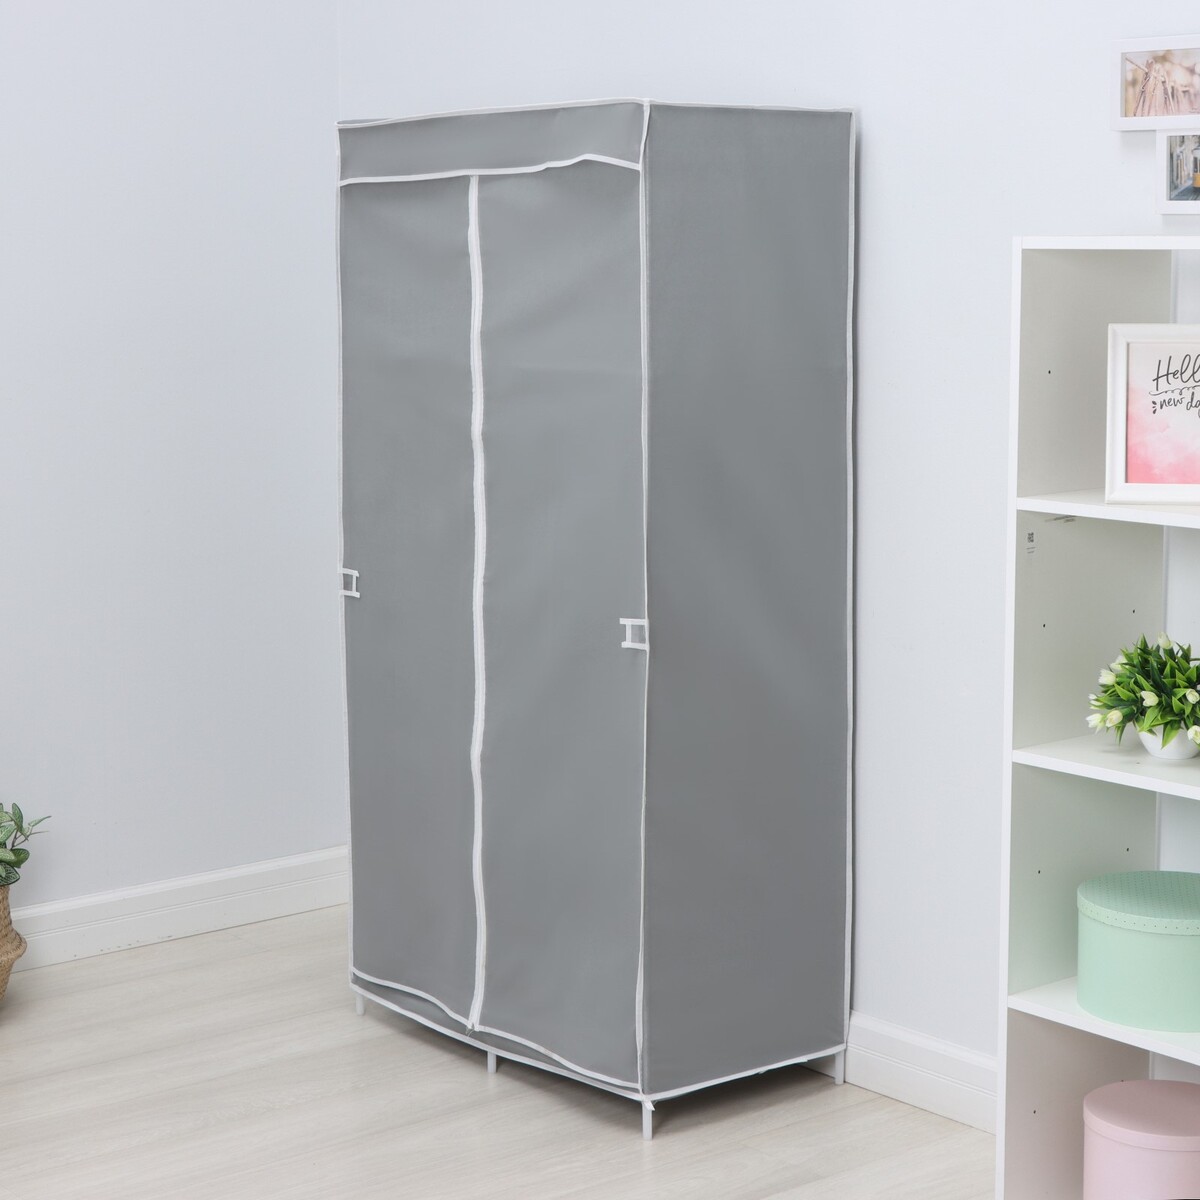 Шкаф тканевый каркасный, складной ladо́m, 83×45×160 см, цвет серый мультиинструмент складной ganzo g101 н g101 h серый